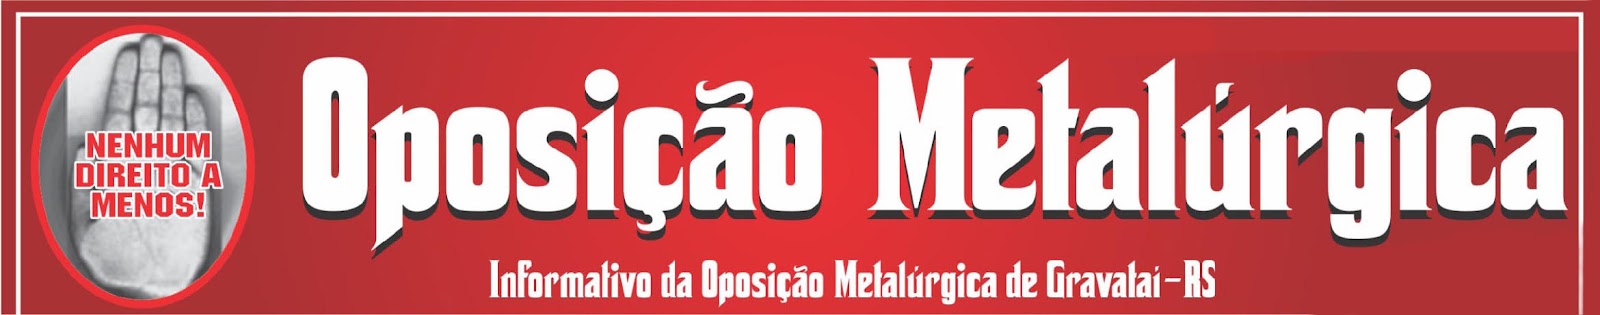 OPOSIÇÃO METALÚRGICA DE GRAVATAÍ - RS